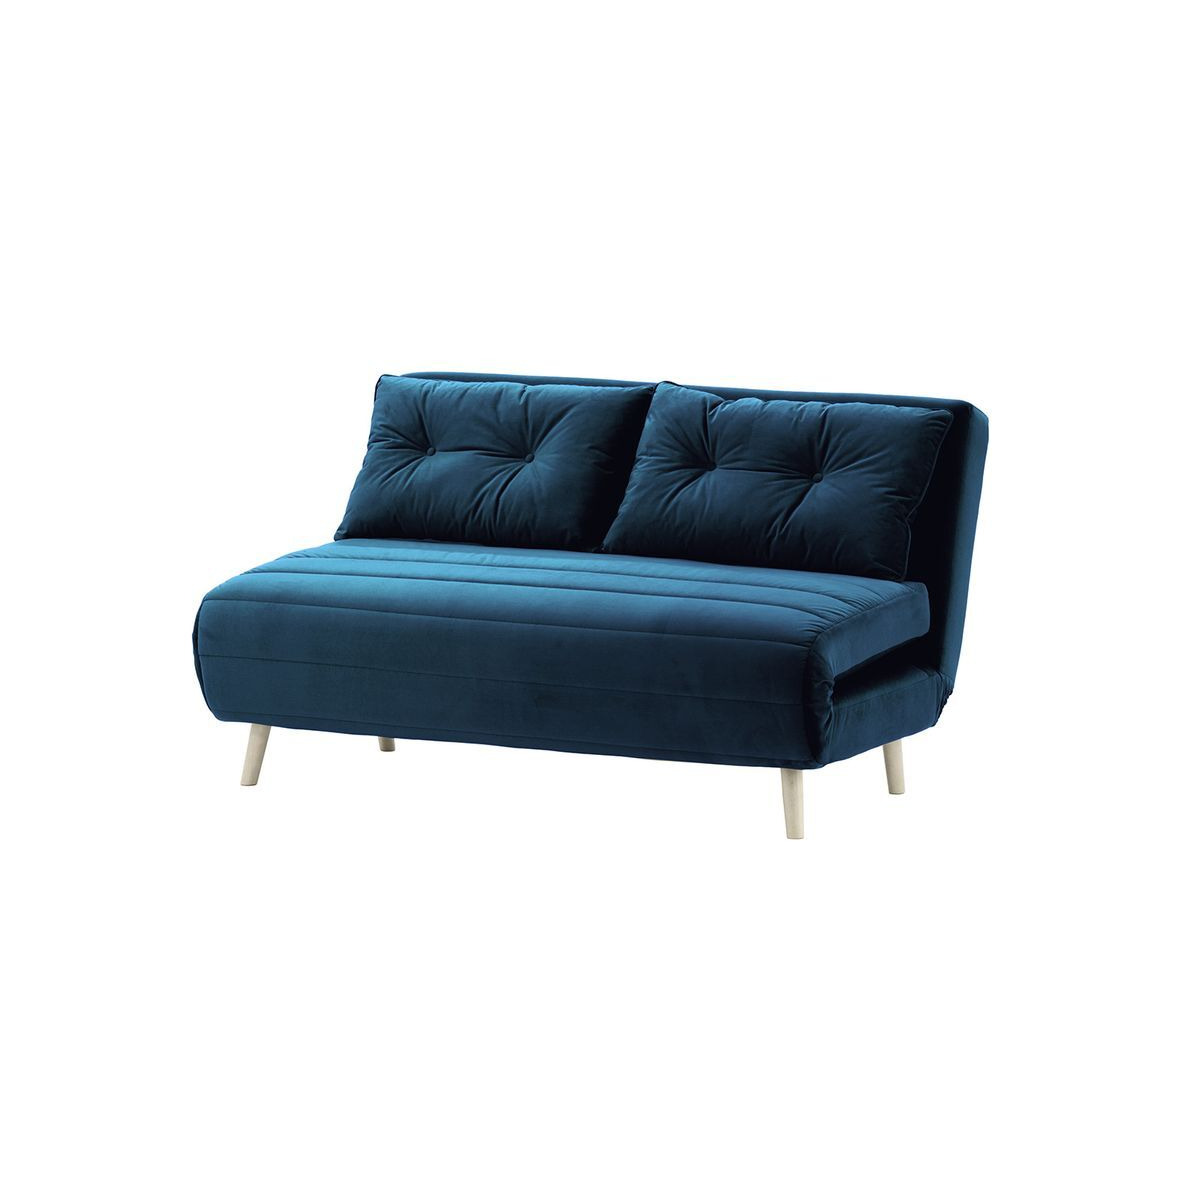 Flic Large Double Sofa Bed - width 142 cm, blue, Leg colour: white - image 1